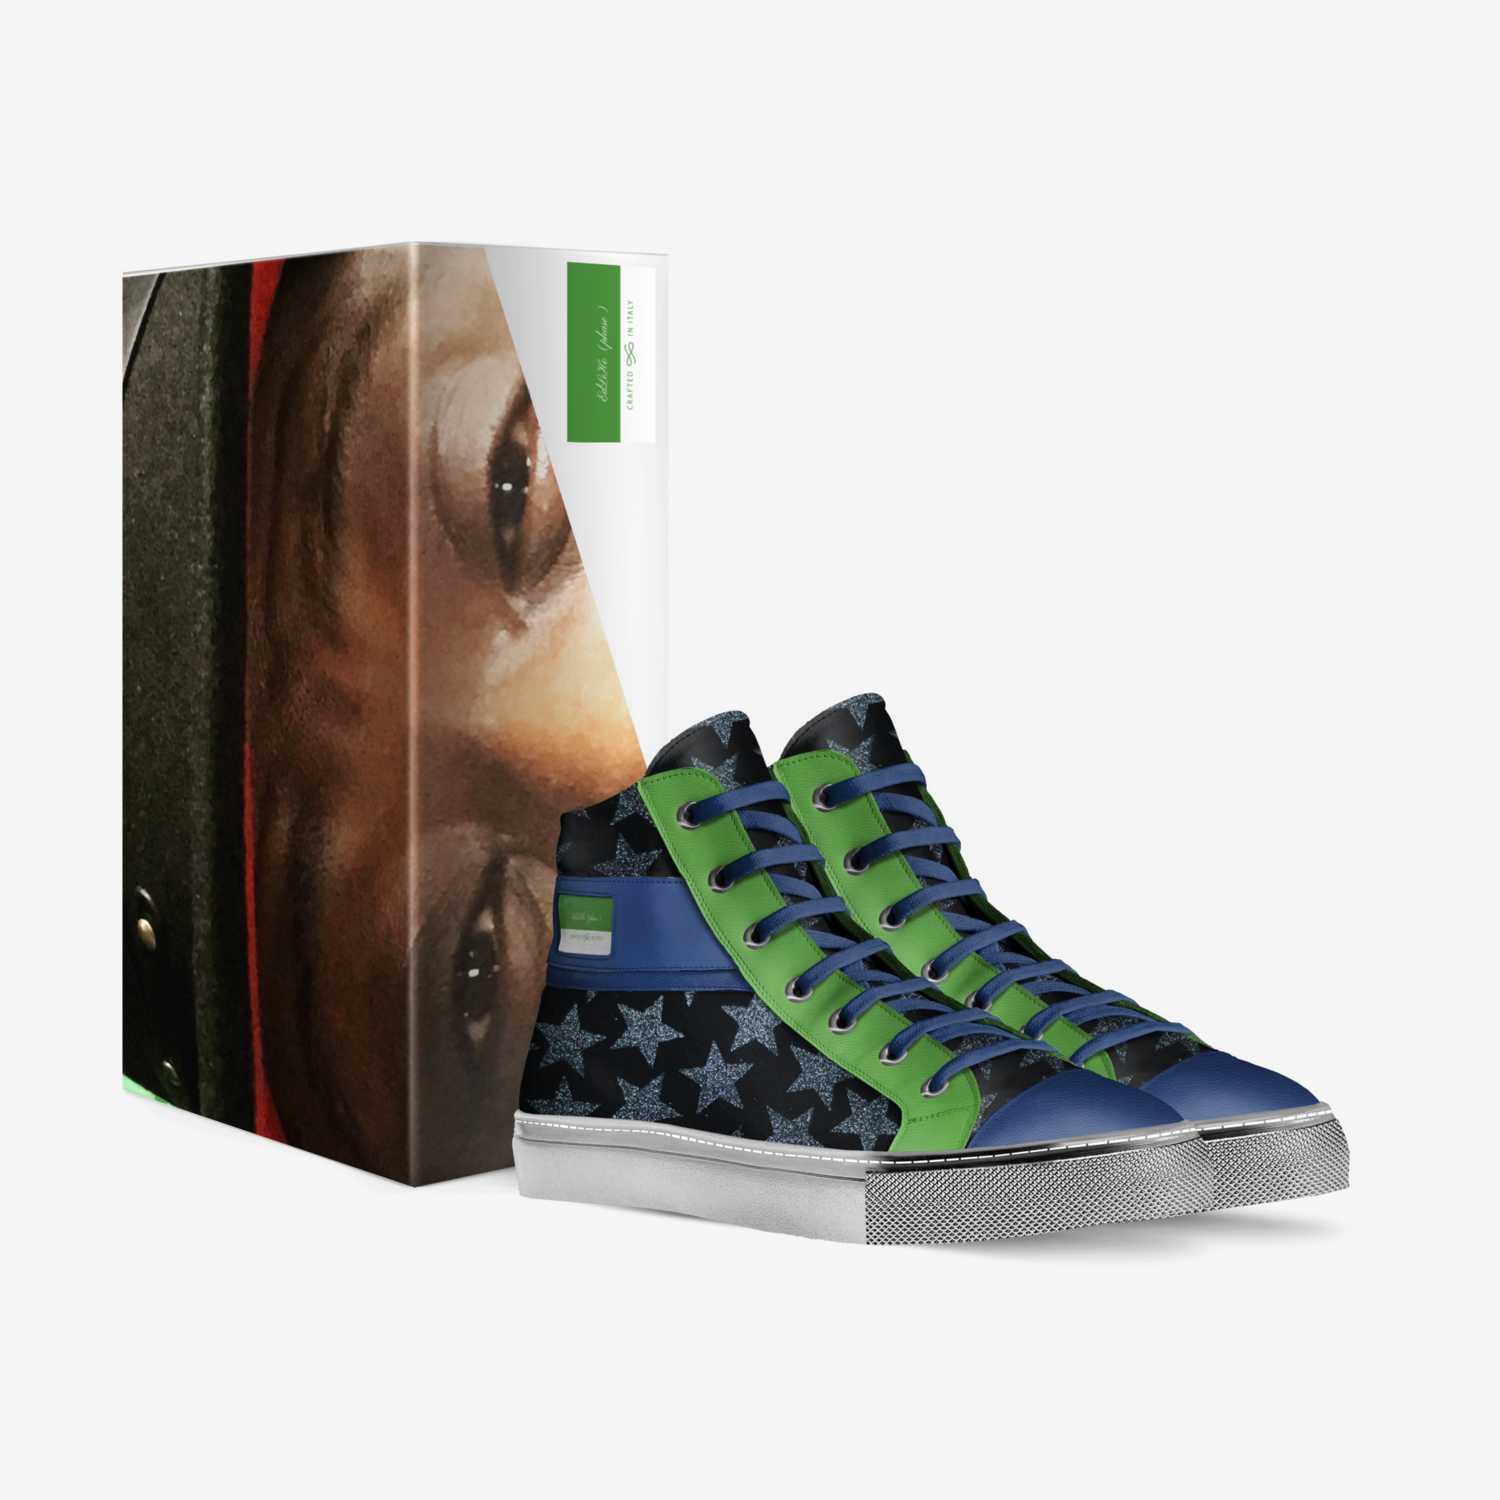 EdLeHo (phase) custom made in Italy shoes by Edward Howard | Box view